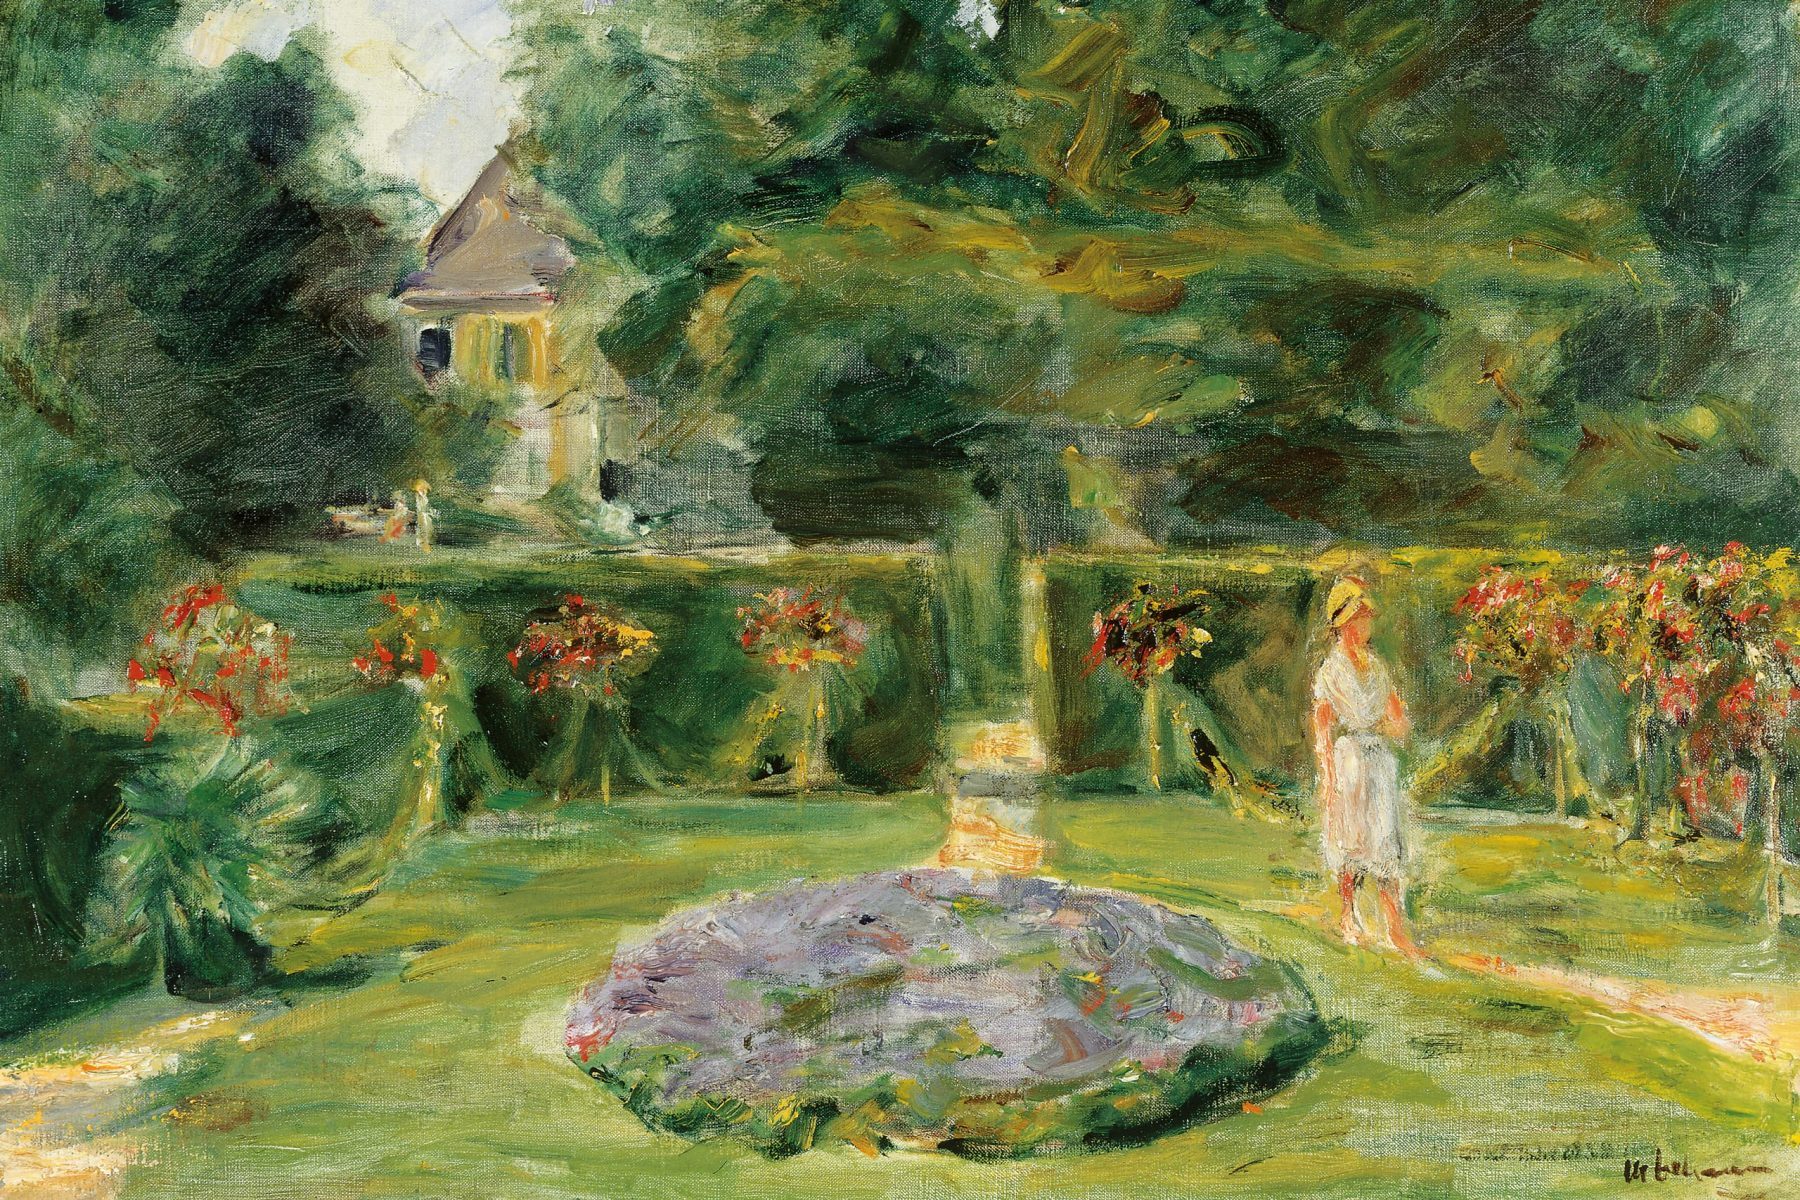 Gartengemälde mit einem vom hohen Hecken umschlossenen Bereich, in der Mitte ein violett bepflanztes rundes Beet. Eine in weiß gekleidete Frau mit Hut läuft am rechten Bildrand. Im Hintergrund sind weitere Bäume und links ein Gebäude.